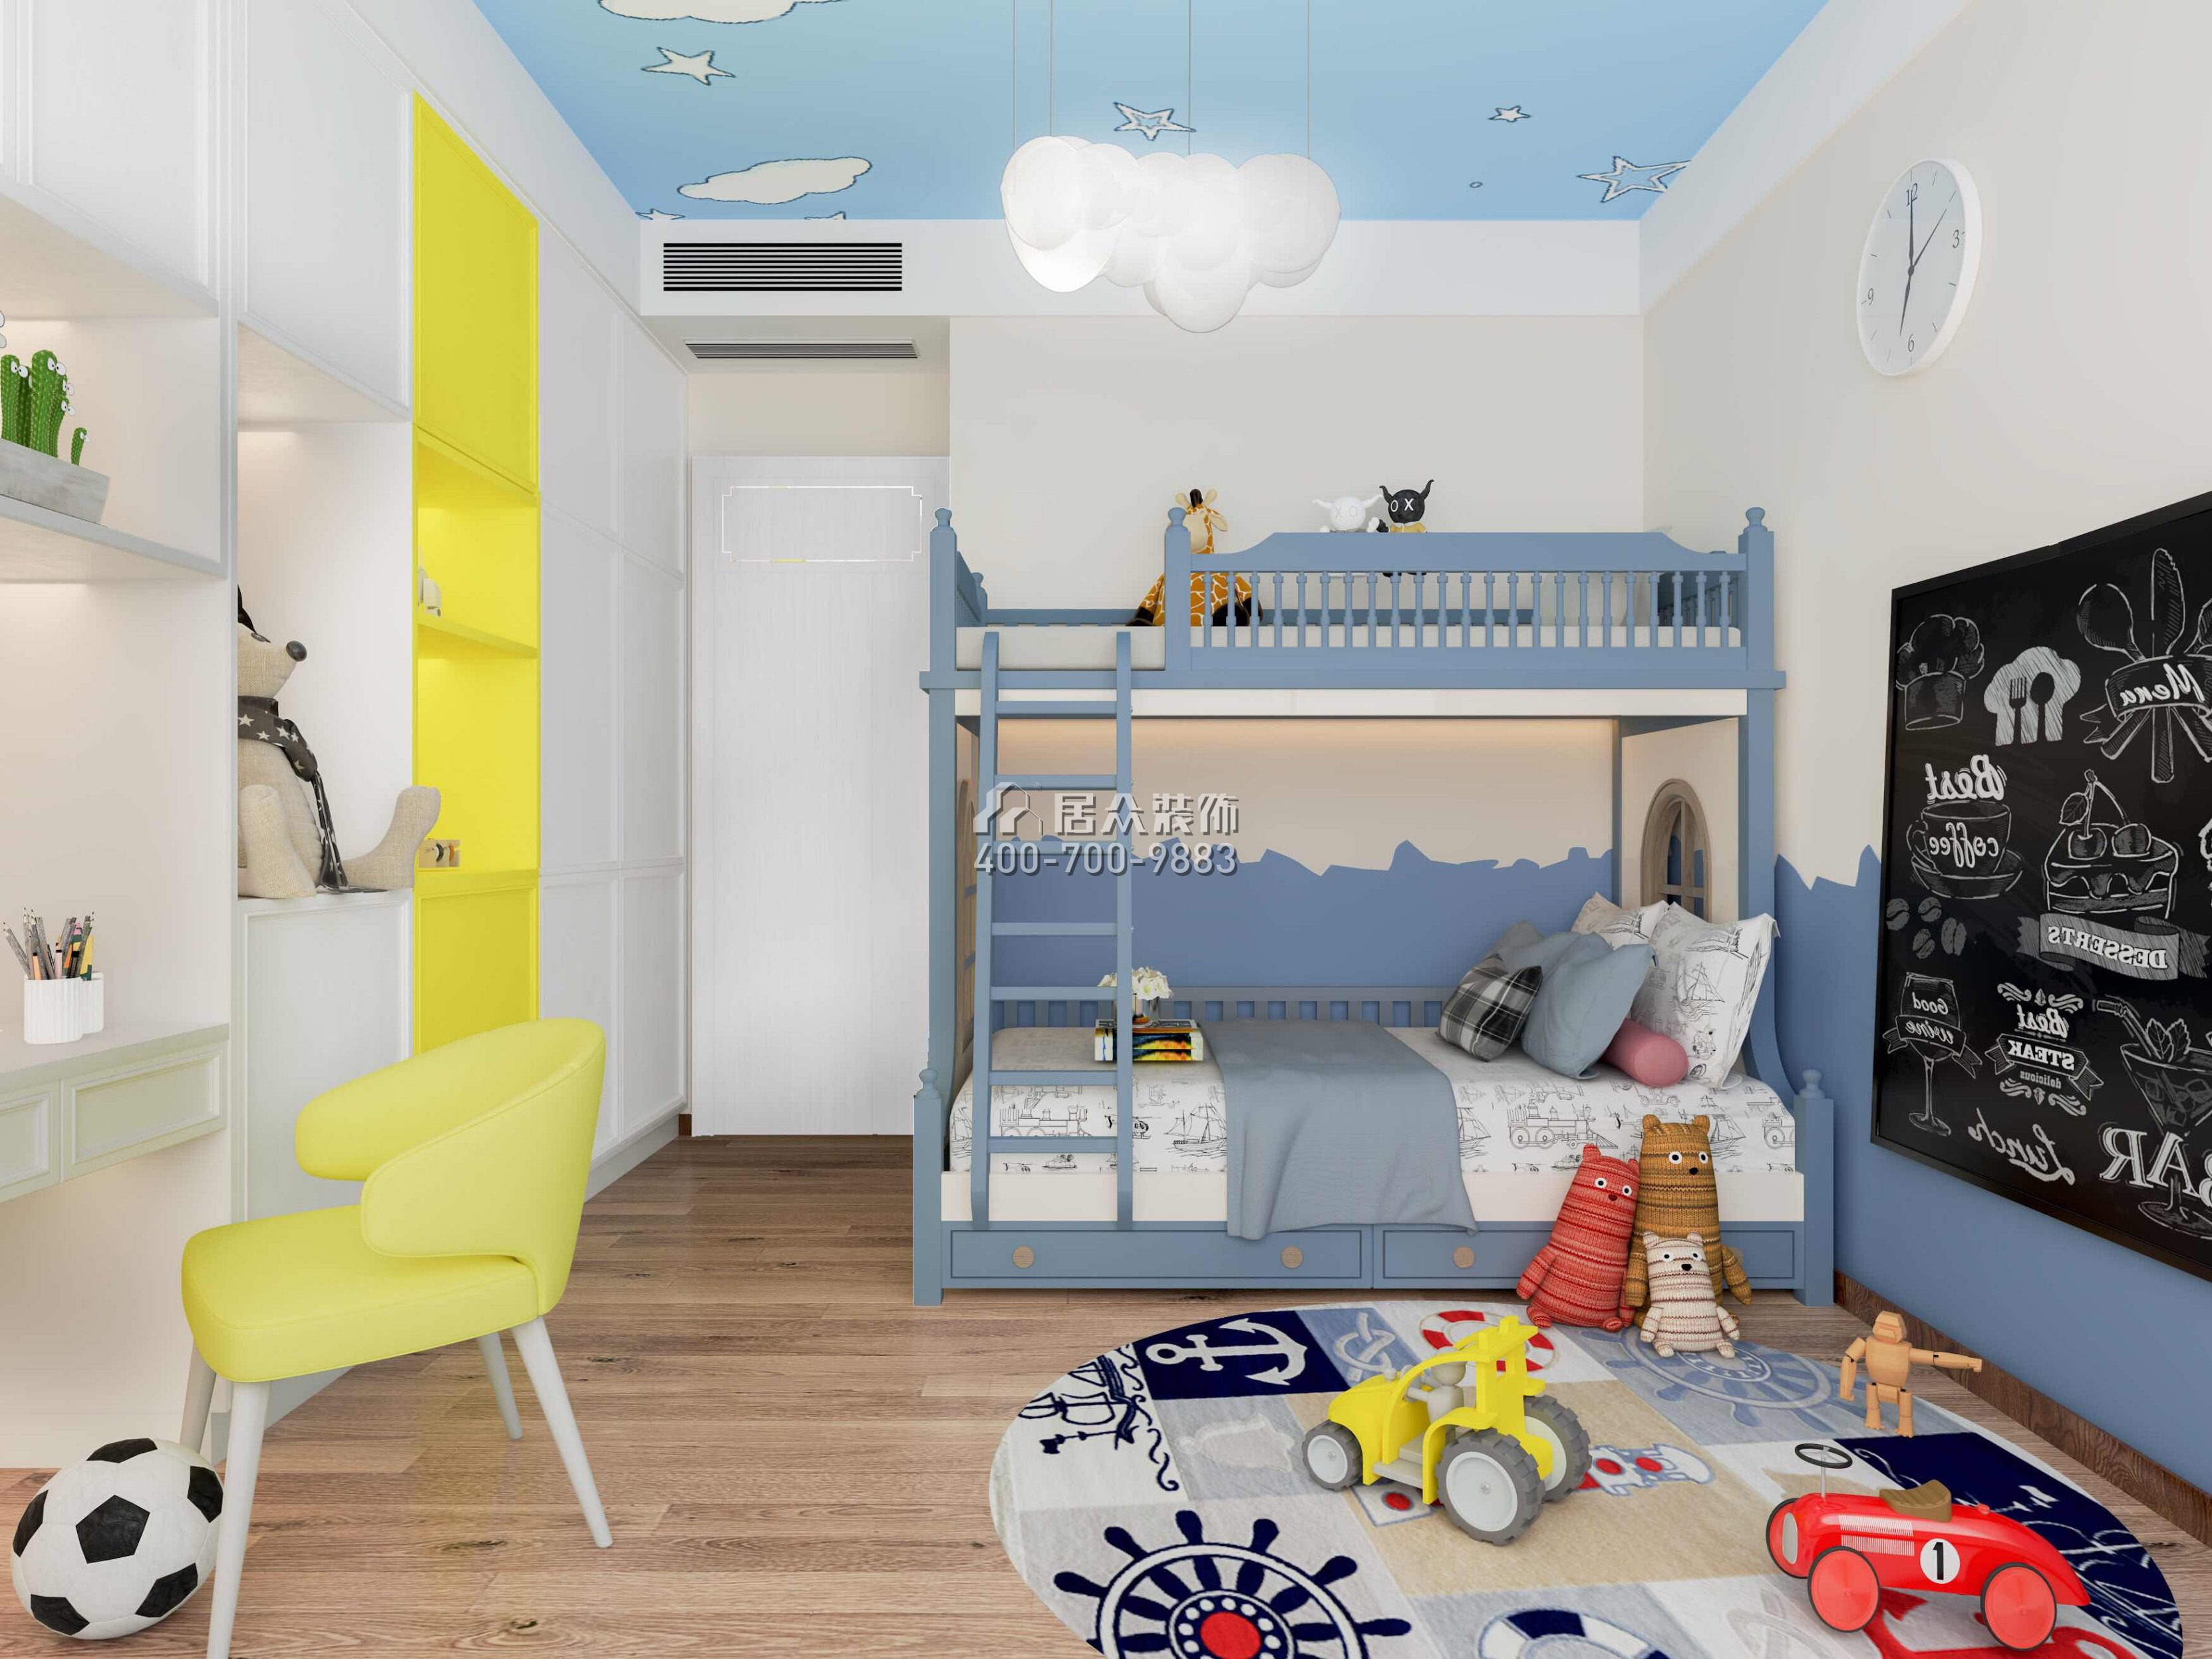 華發新城226平方米中式風格平層戶型兒童房裝修效果圖